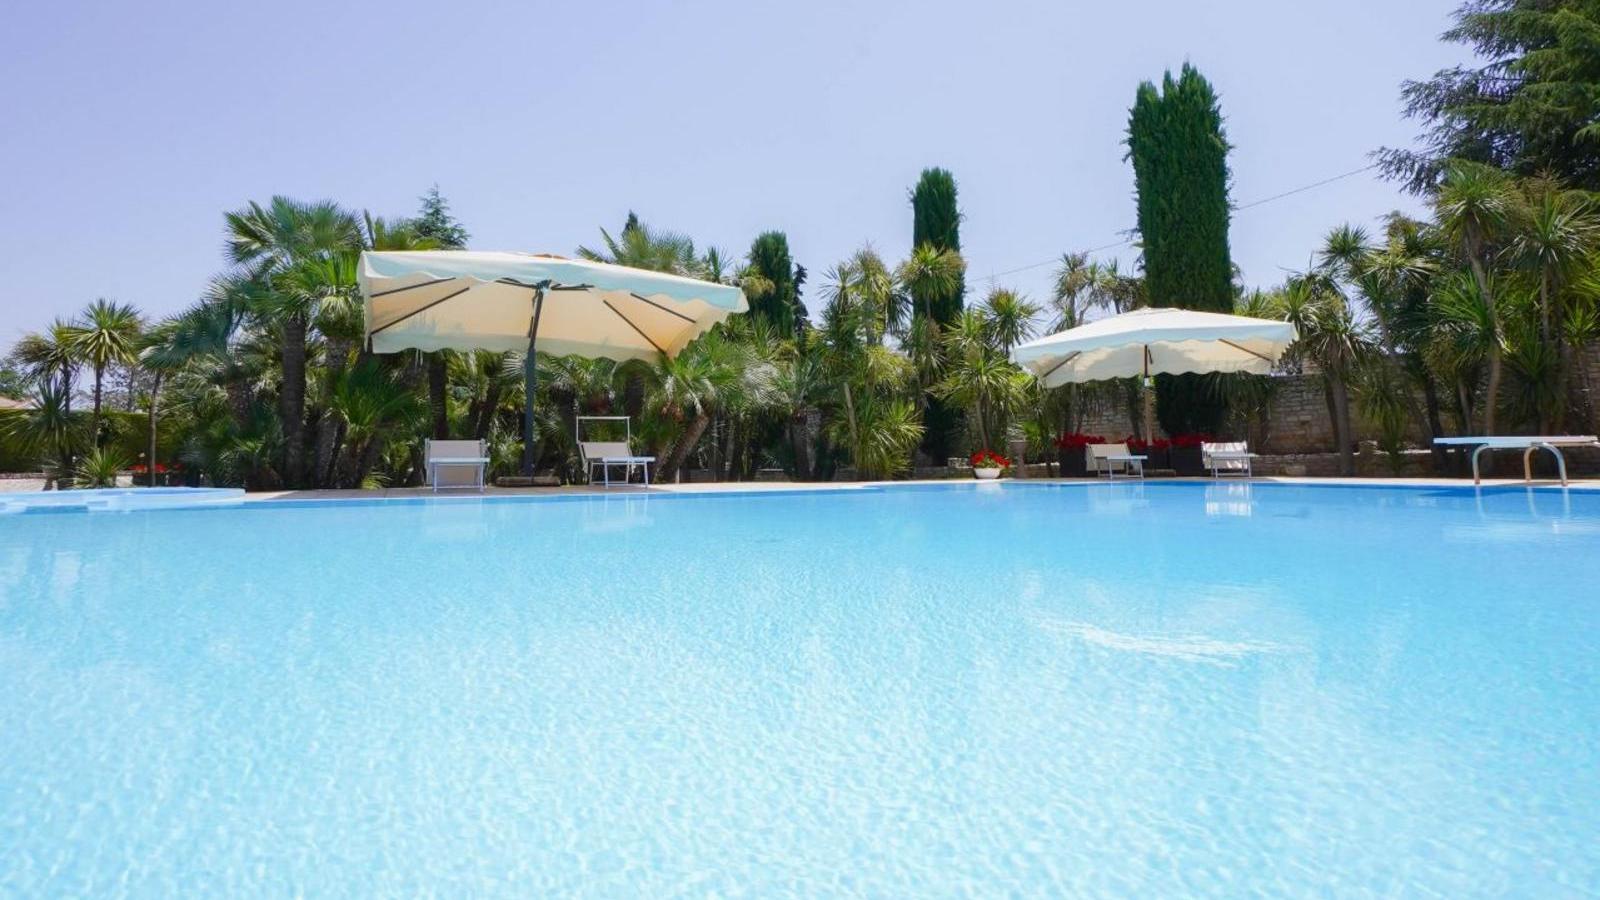 B&B con piscina ad Andria - B&B Villa Adriana | Localtourism.it